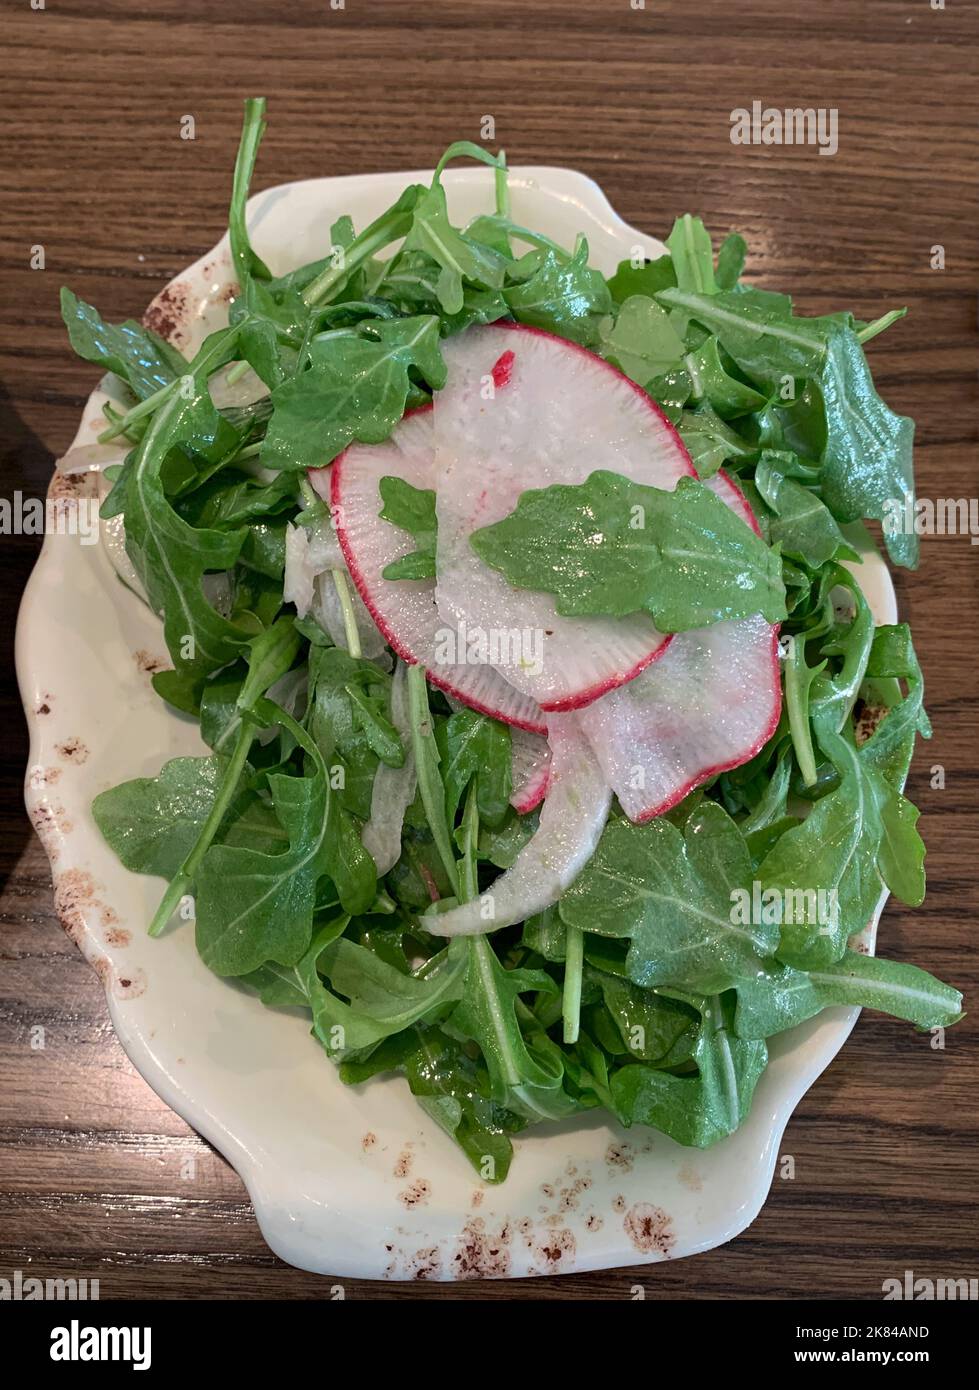 Arugula salad with Radish Garnish. Stock Photo